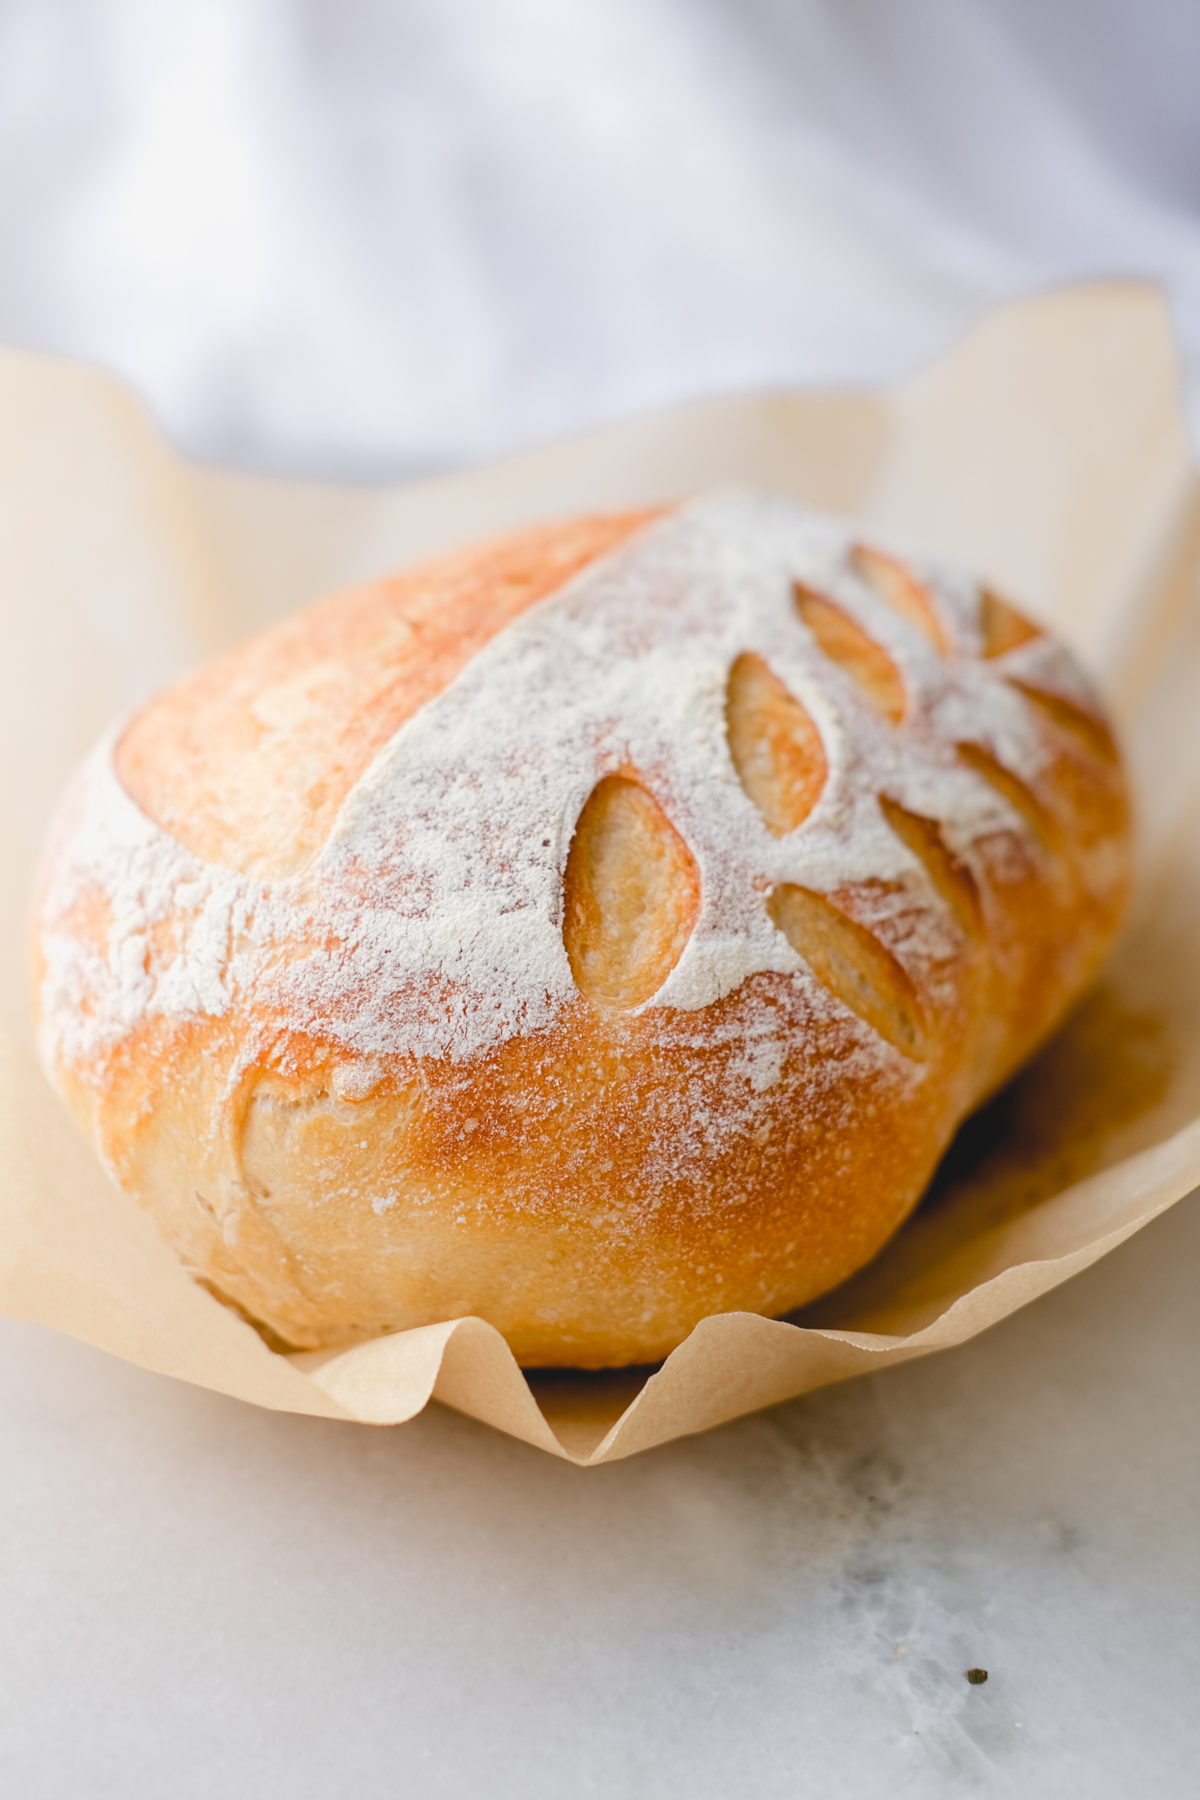 https://www.kierstenhickman.com/wp-content/uploads/2021/12/sourdough-bread-one-loaf-kiersten-hickman-13.jpg